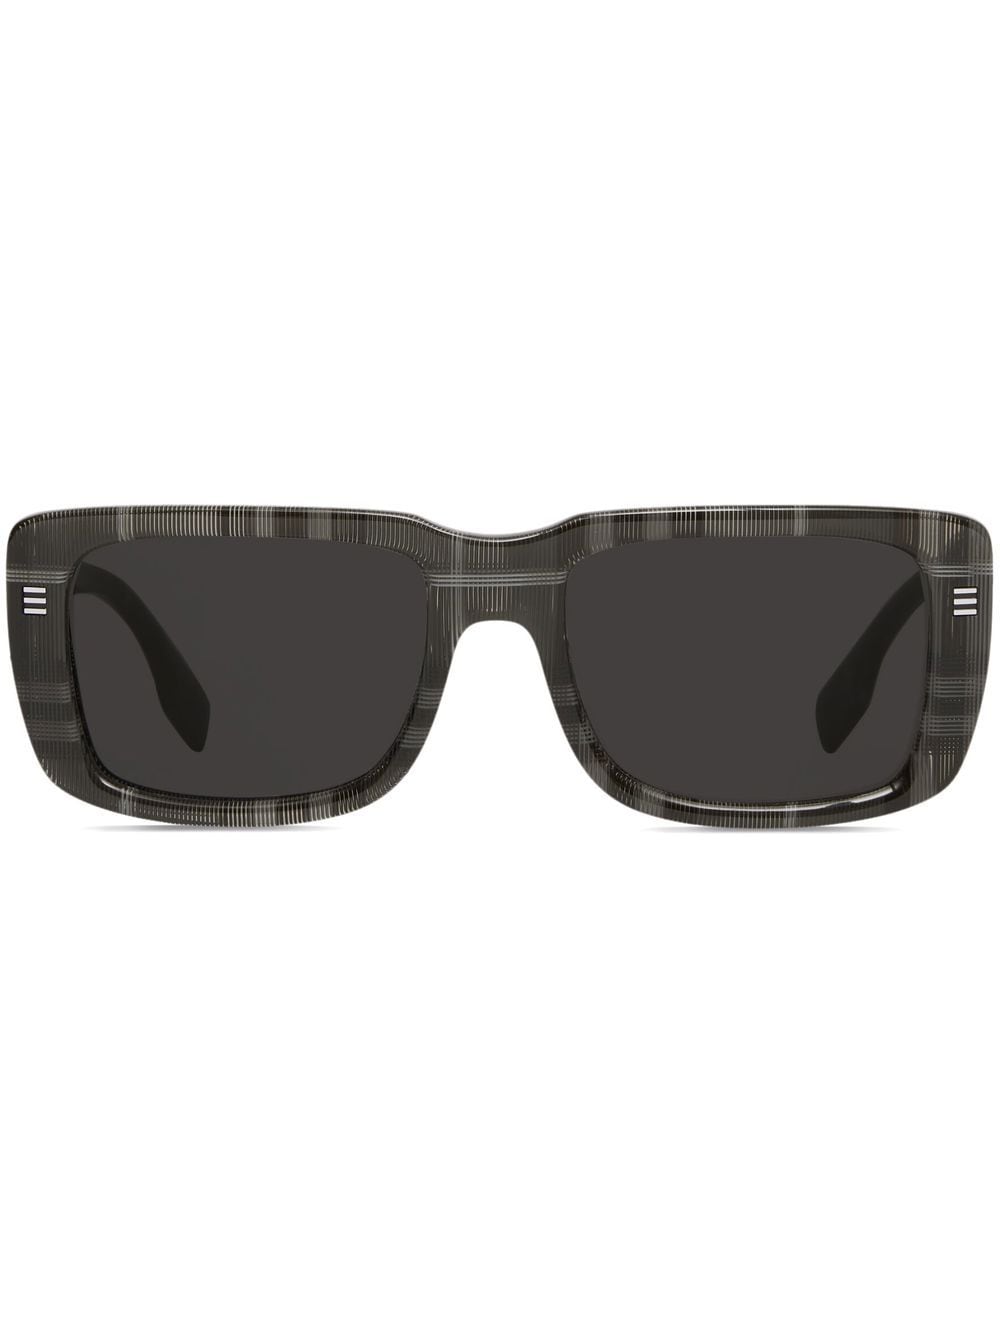 burberry lunettes de soleil à monture rectangulaire - gris